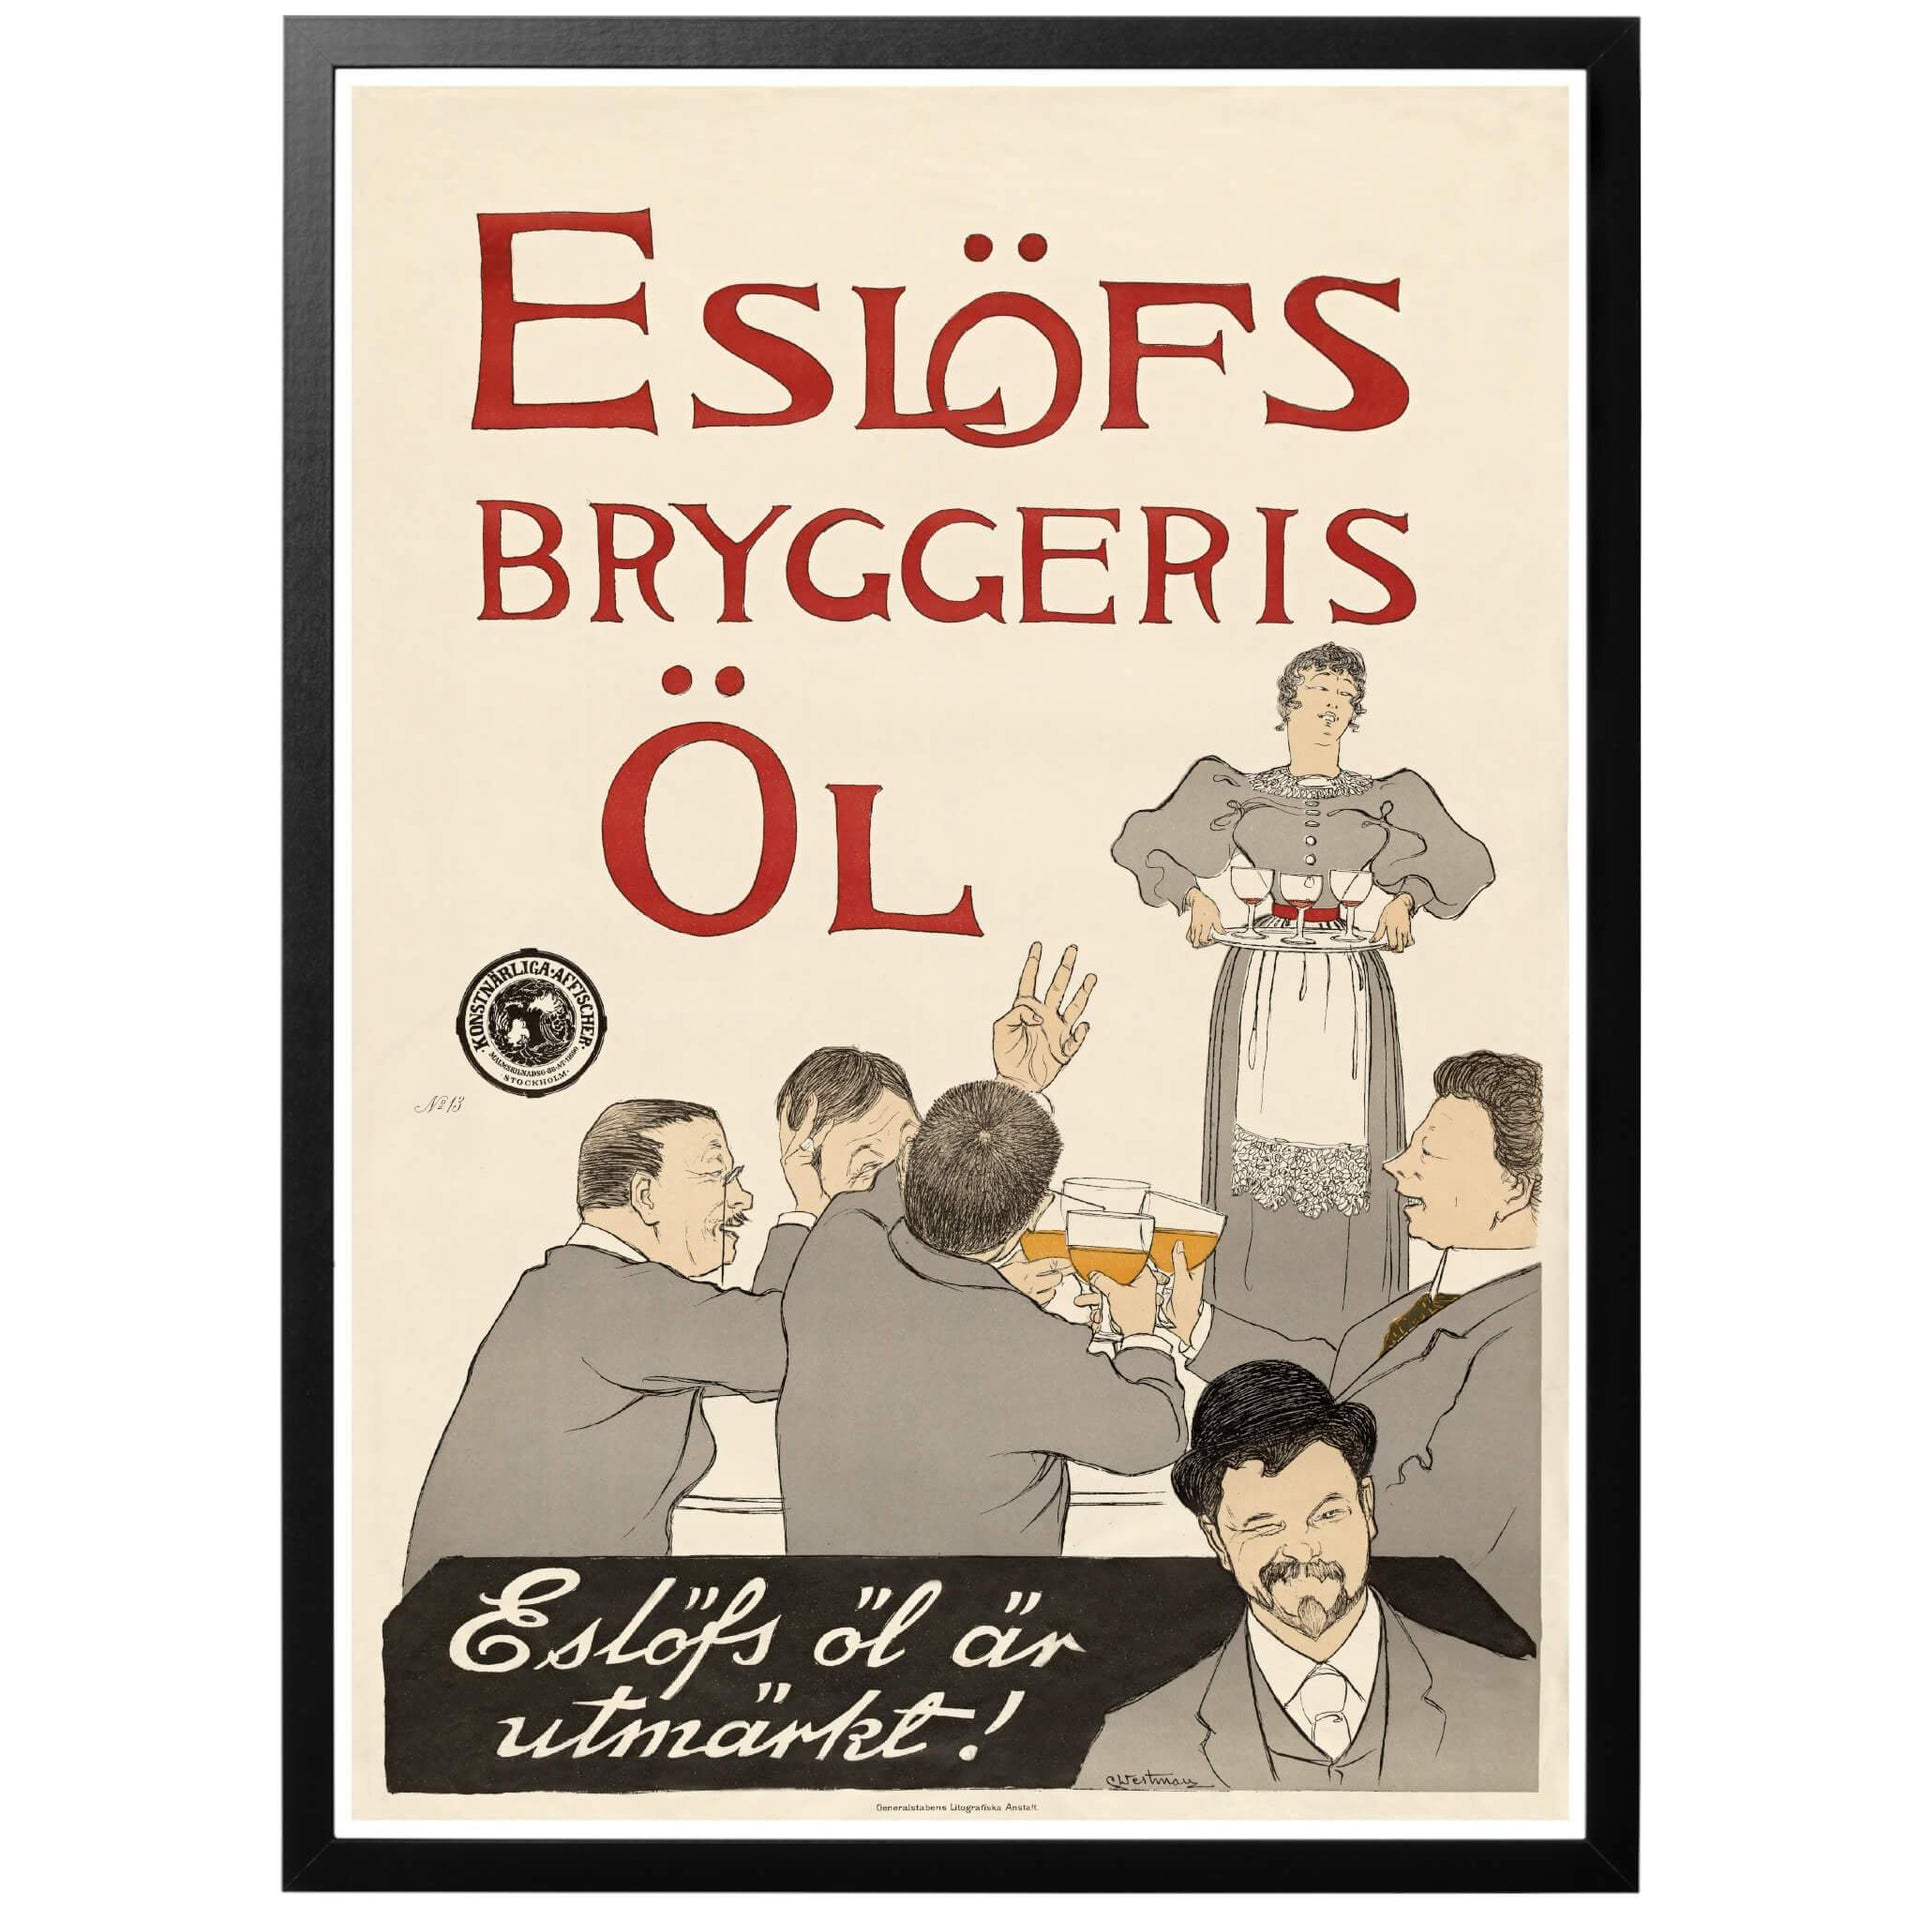 Eslöfs Bryggeris Öl - Eslöfs öl är utmärkt Svensk ölaffisch från 1896. En riktigt snygg poster som passar vilken vägg som helst! Välj till ram så ramar vi in din affisch kostnadsfritt! Frakt med PostNord.